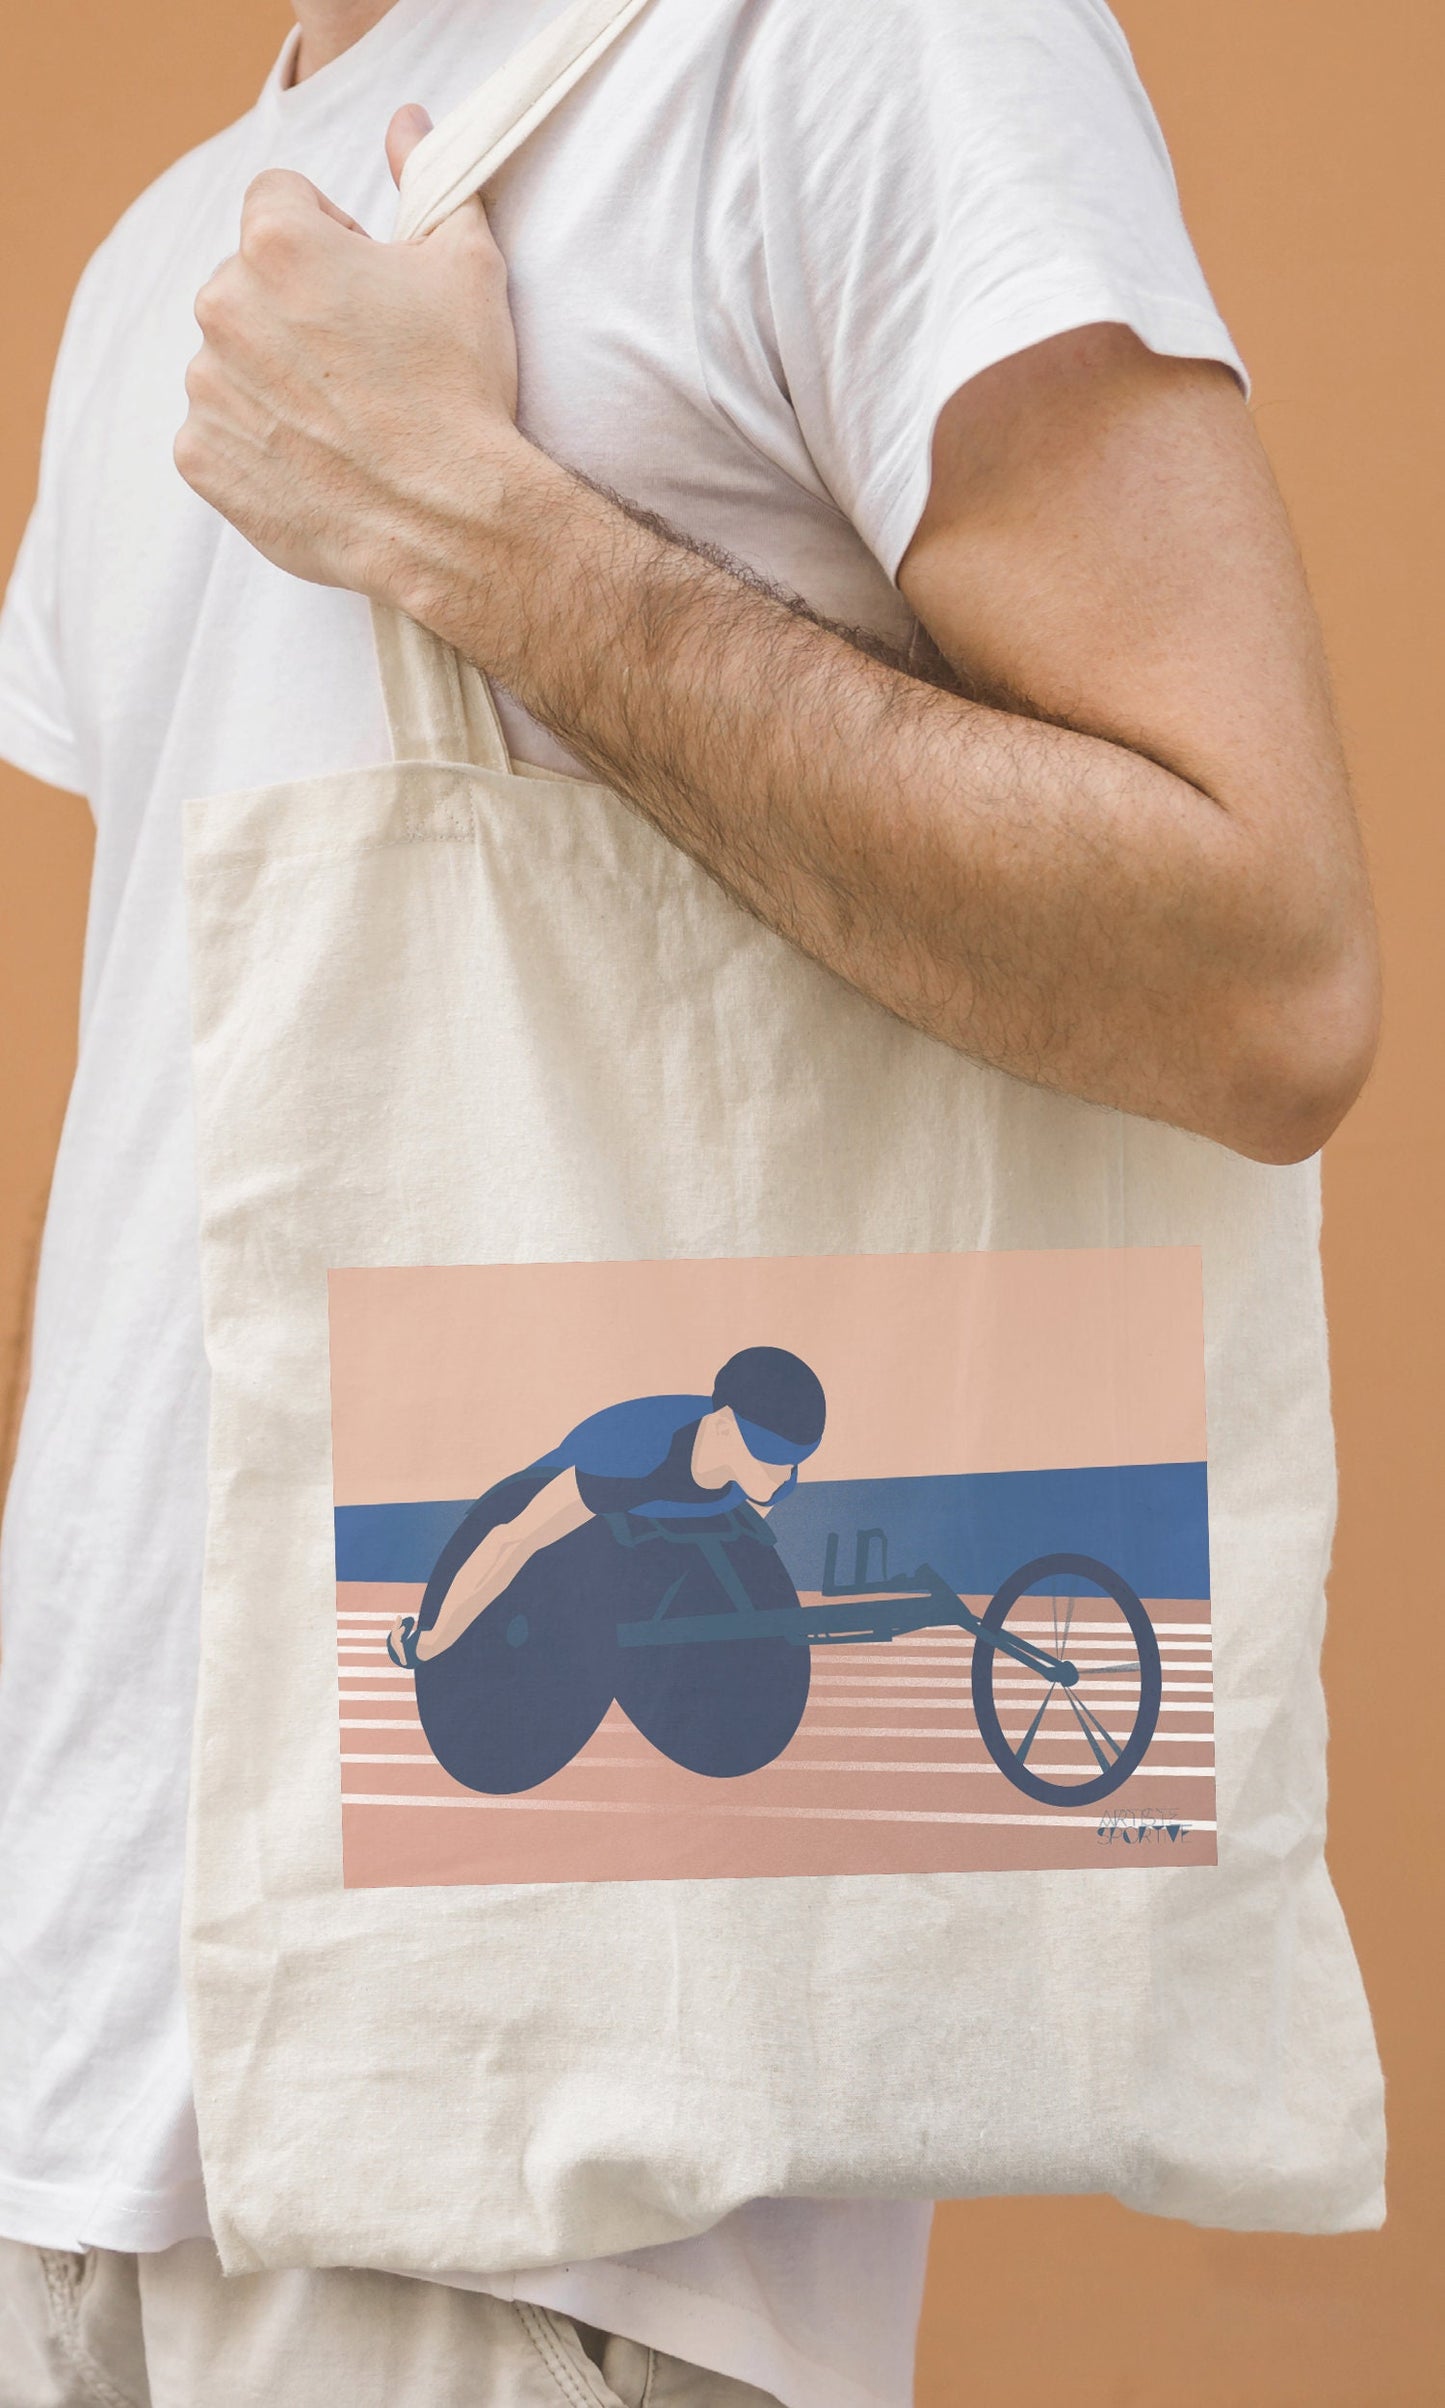 Einkaufstasche oder „Paralympics“-Leichtathletiktasche für Behinderte